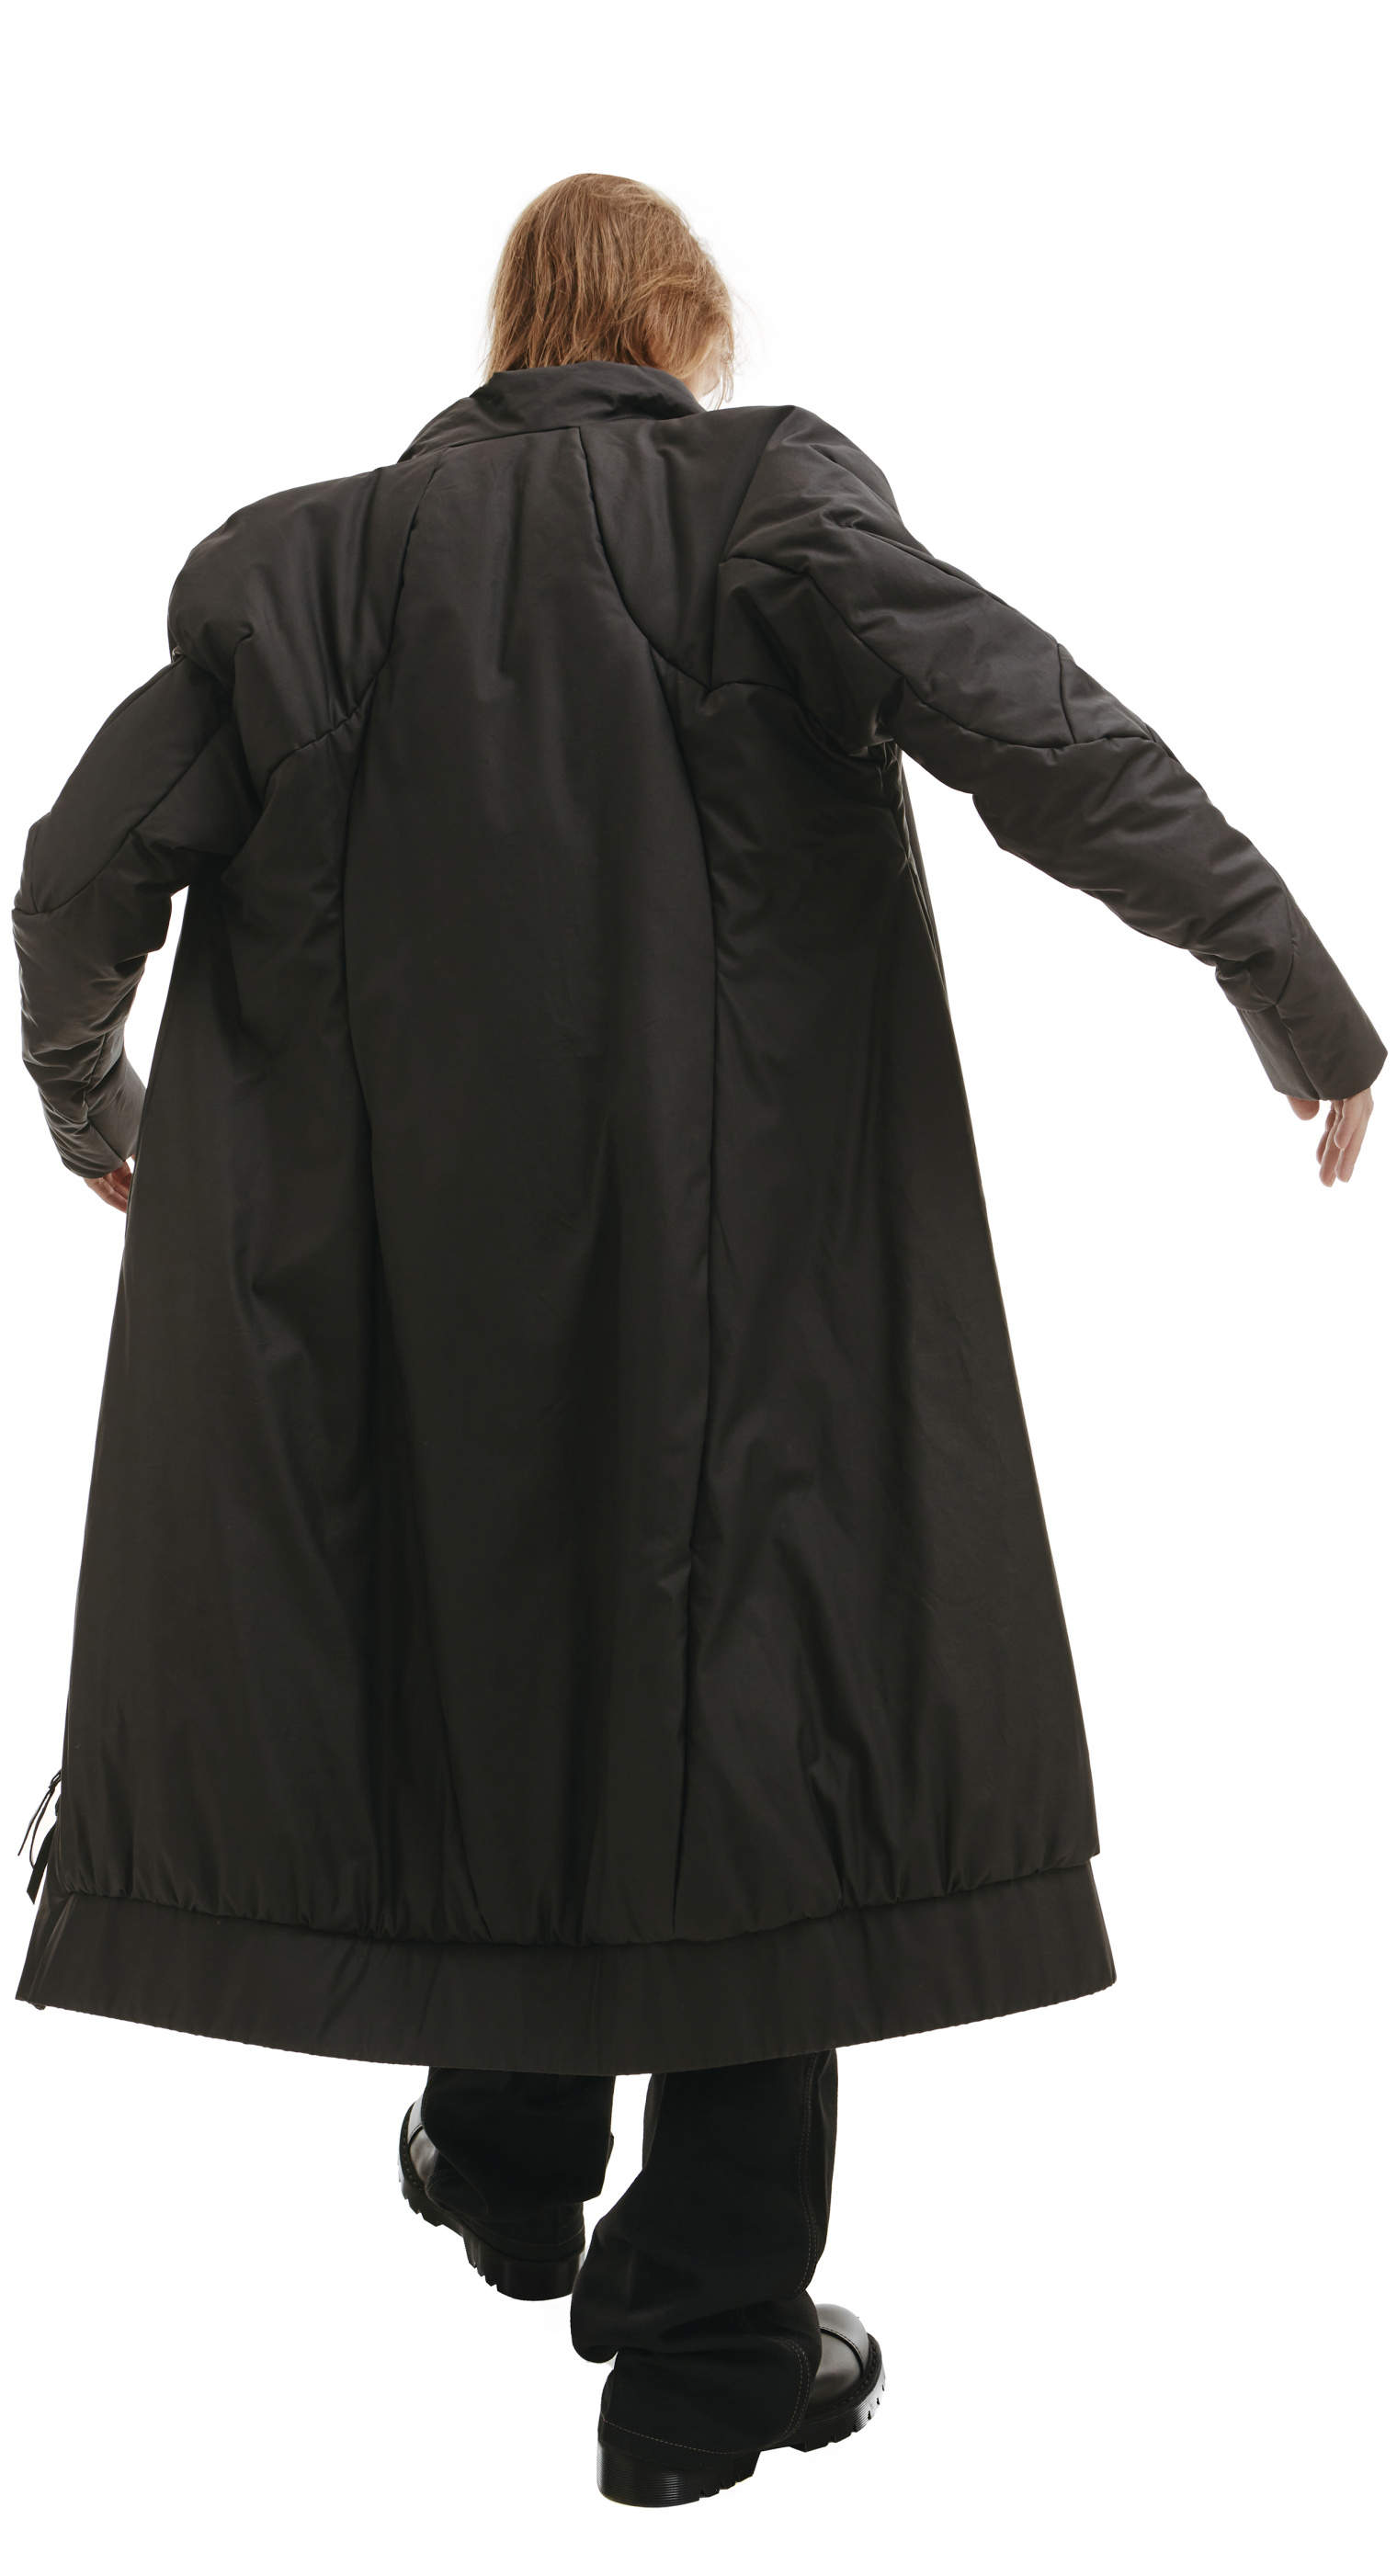 Leon Emanuel Blanck Black Padded Zip-Up Parka Coat